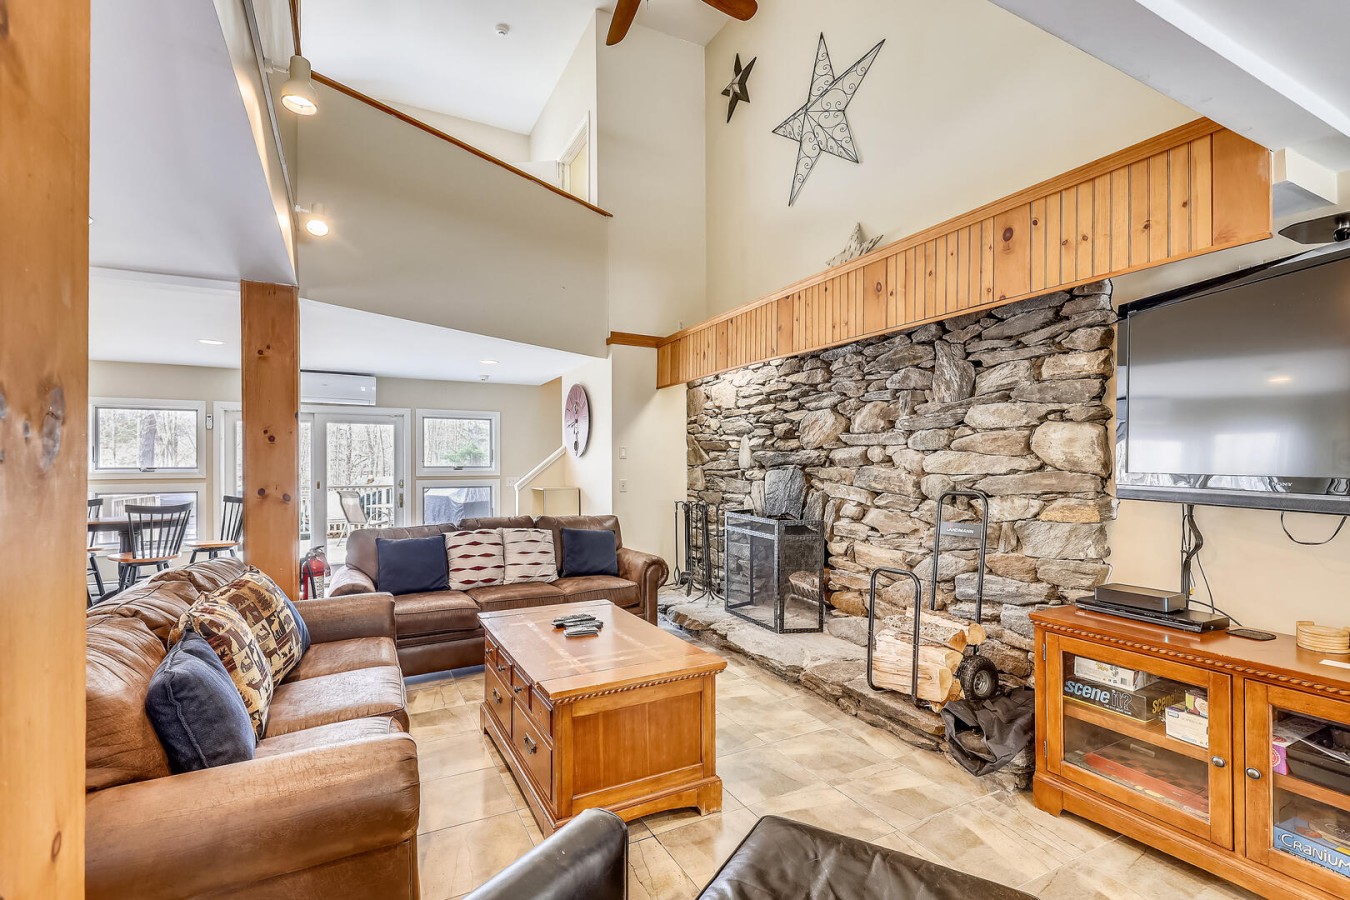 Interior of Top Star Retreat, a rental cabin in Killington, Vermont